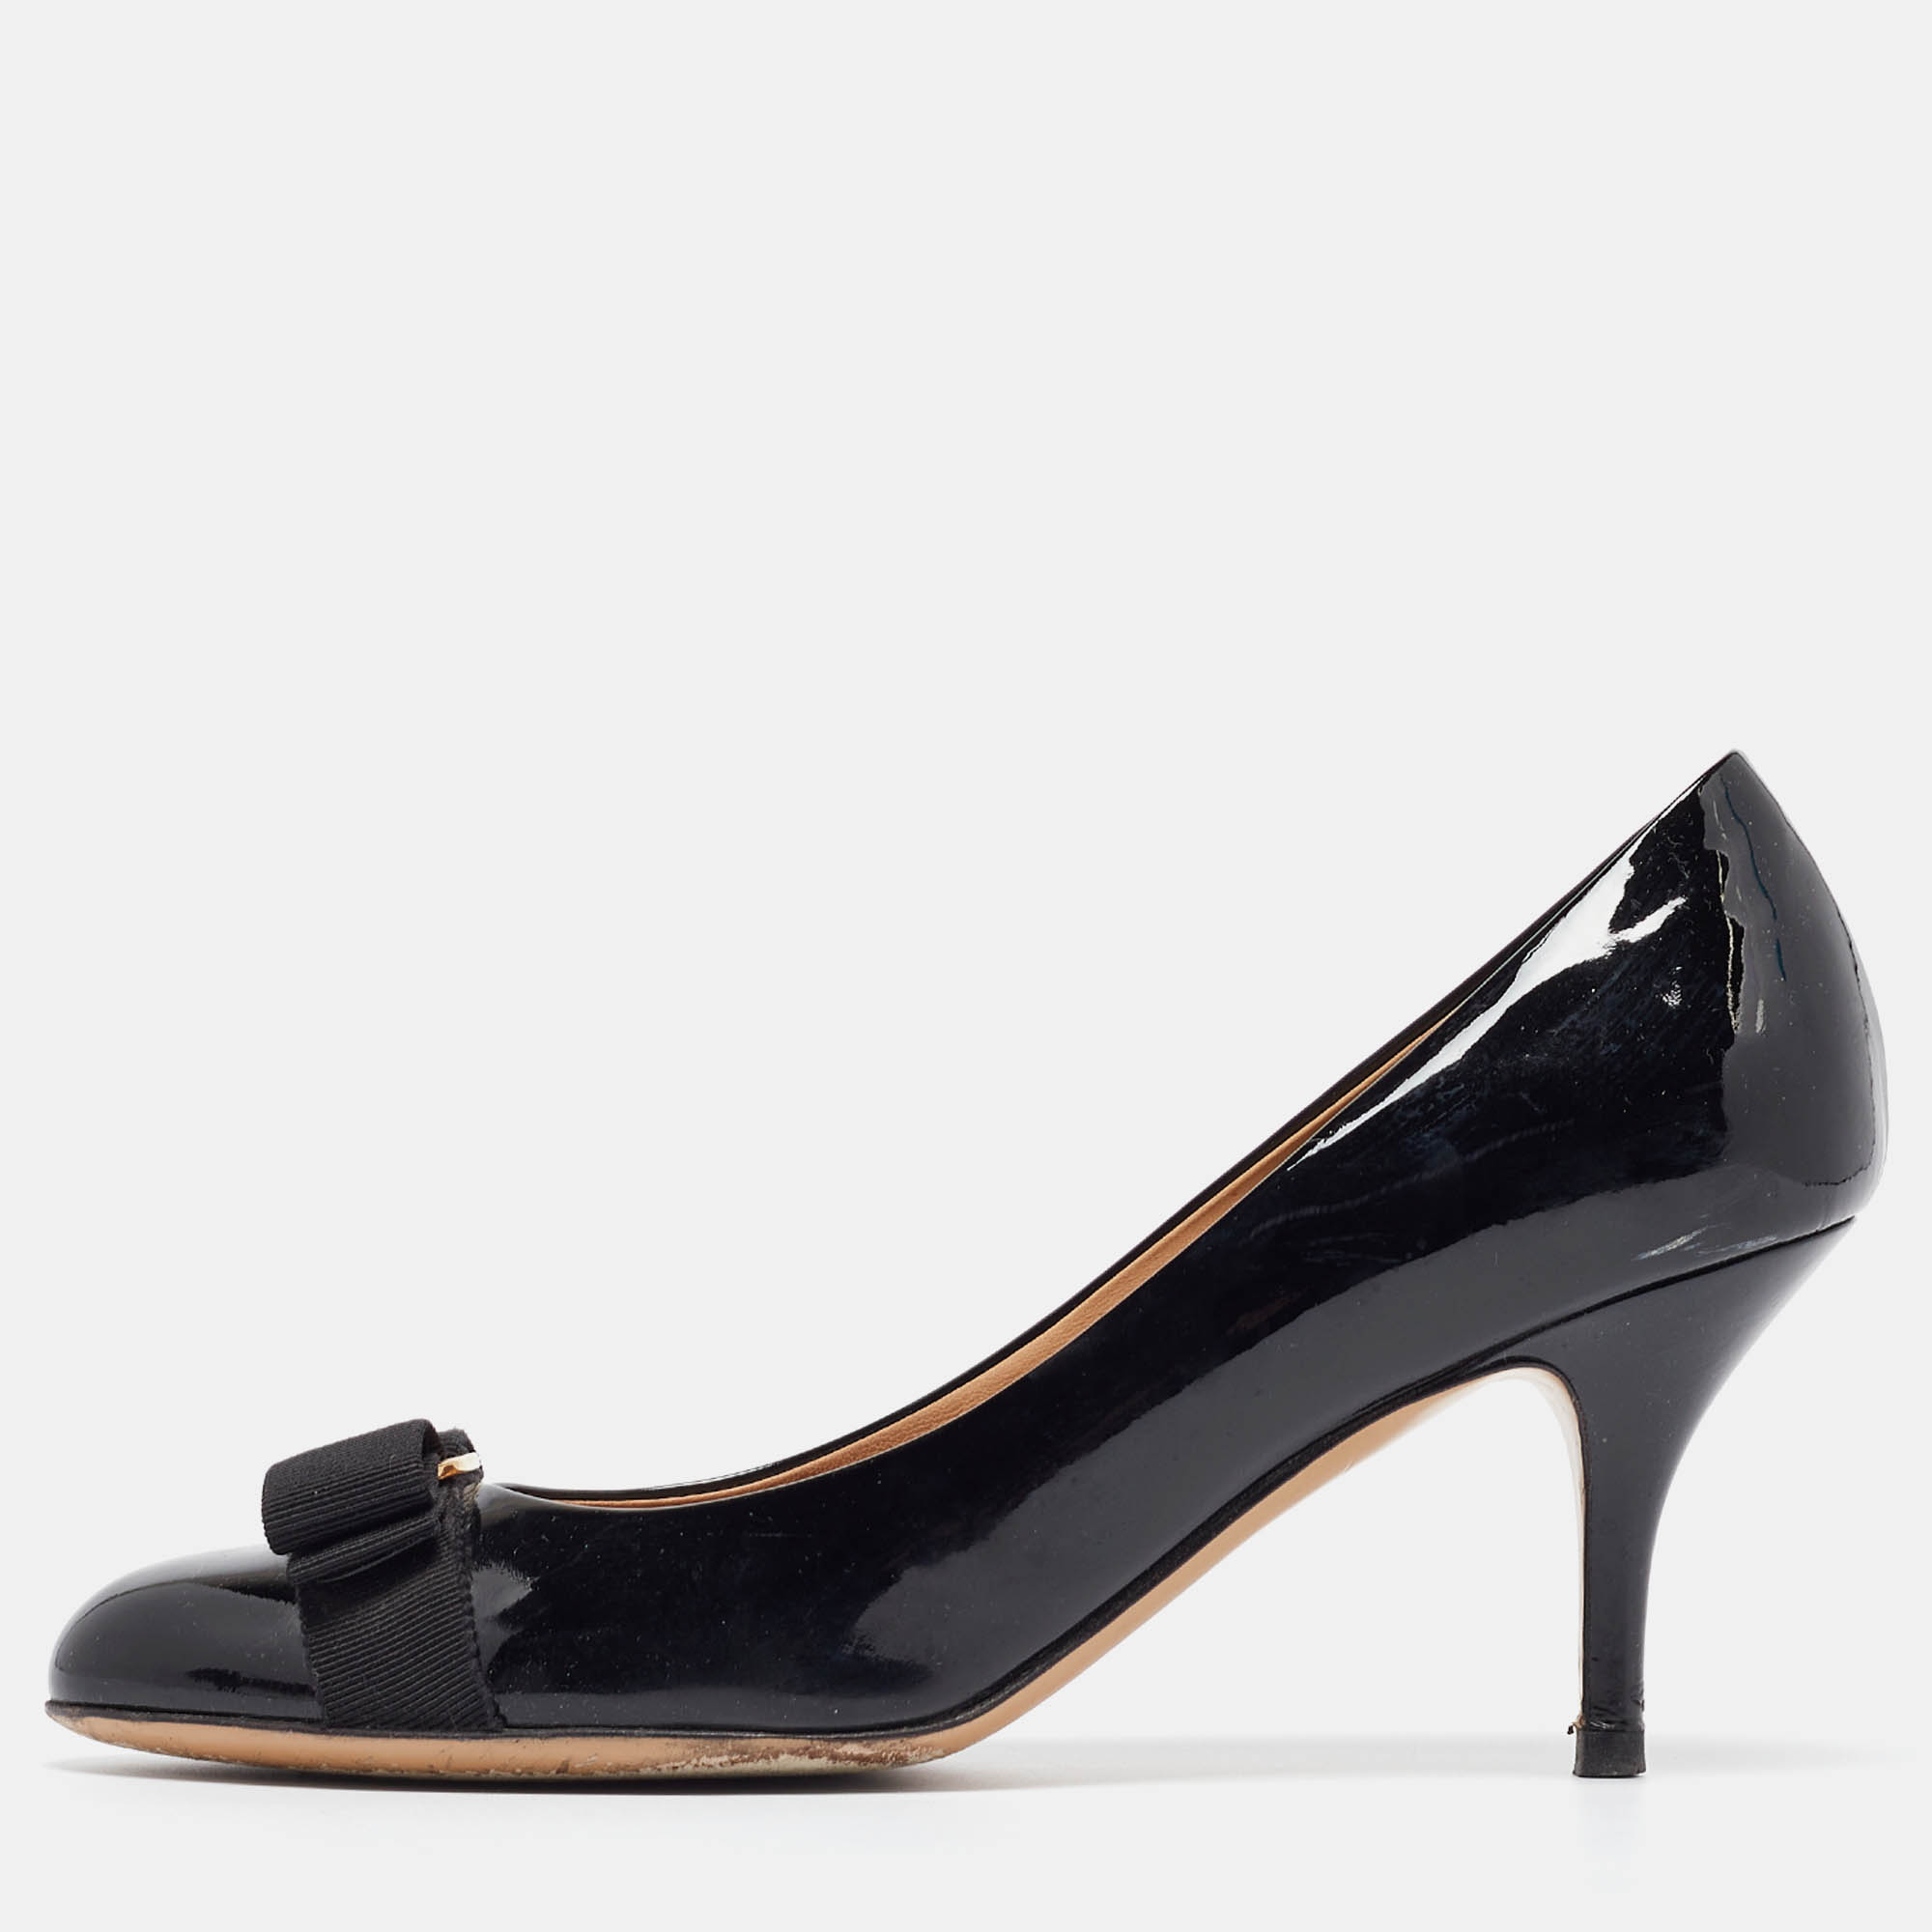 Pre-owned Ferragamo Black Patent Leather Carla Pumps Size 40.5